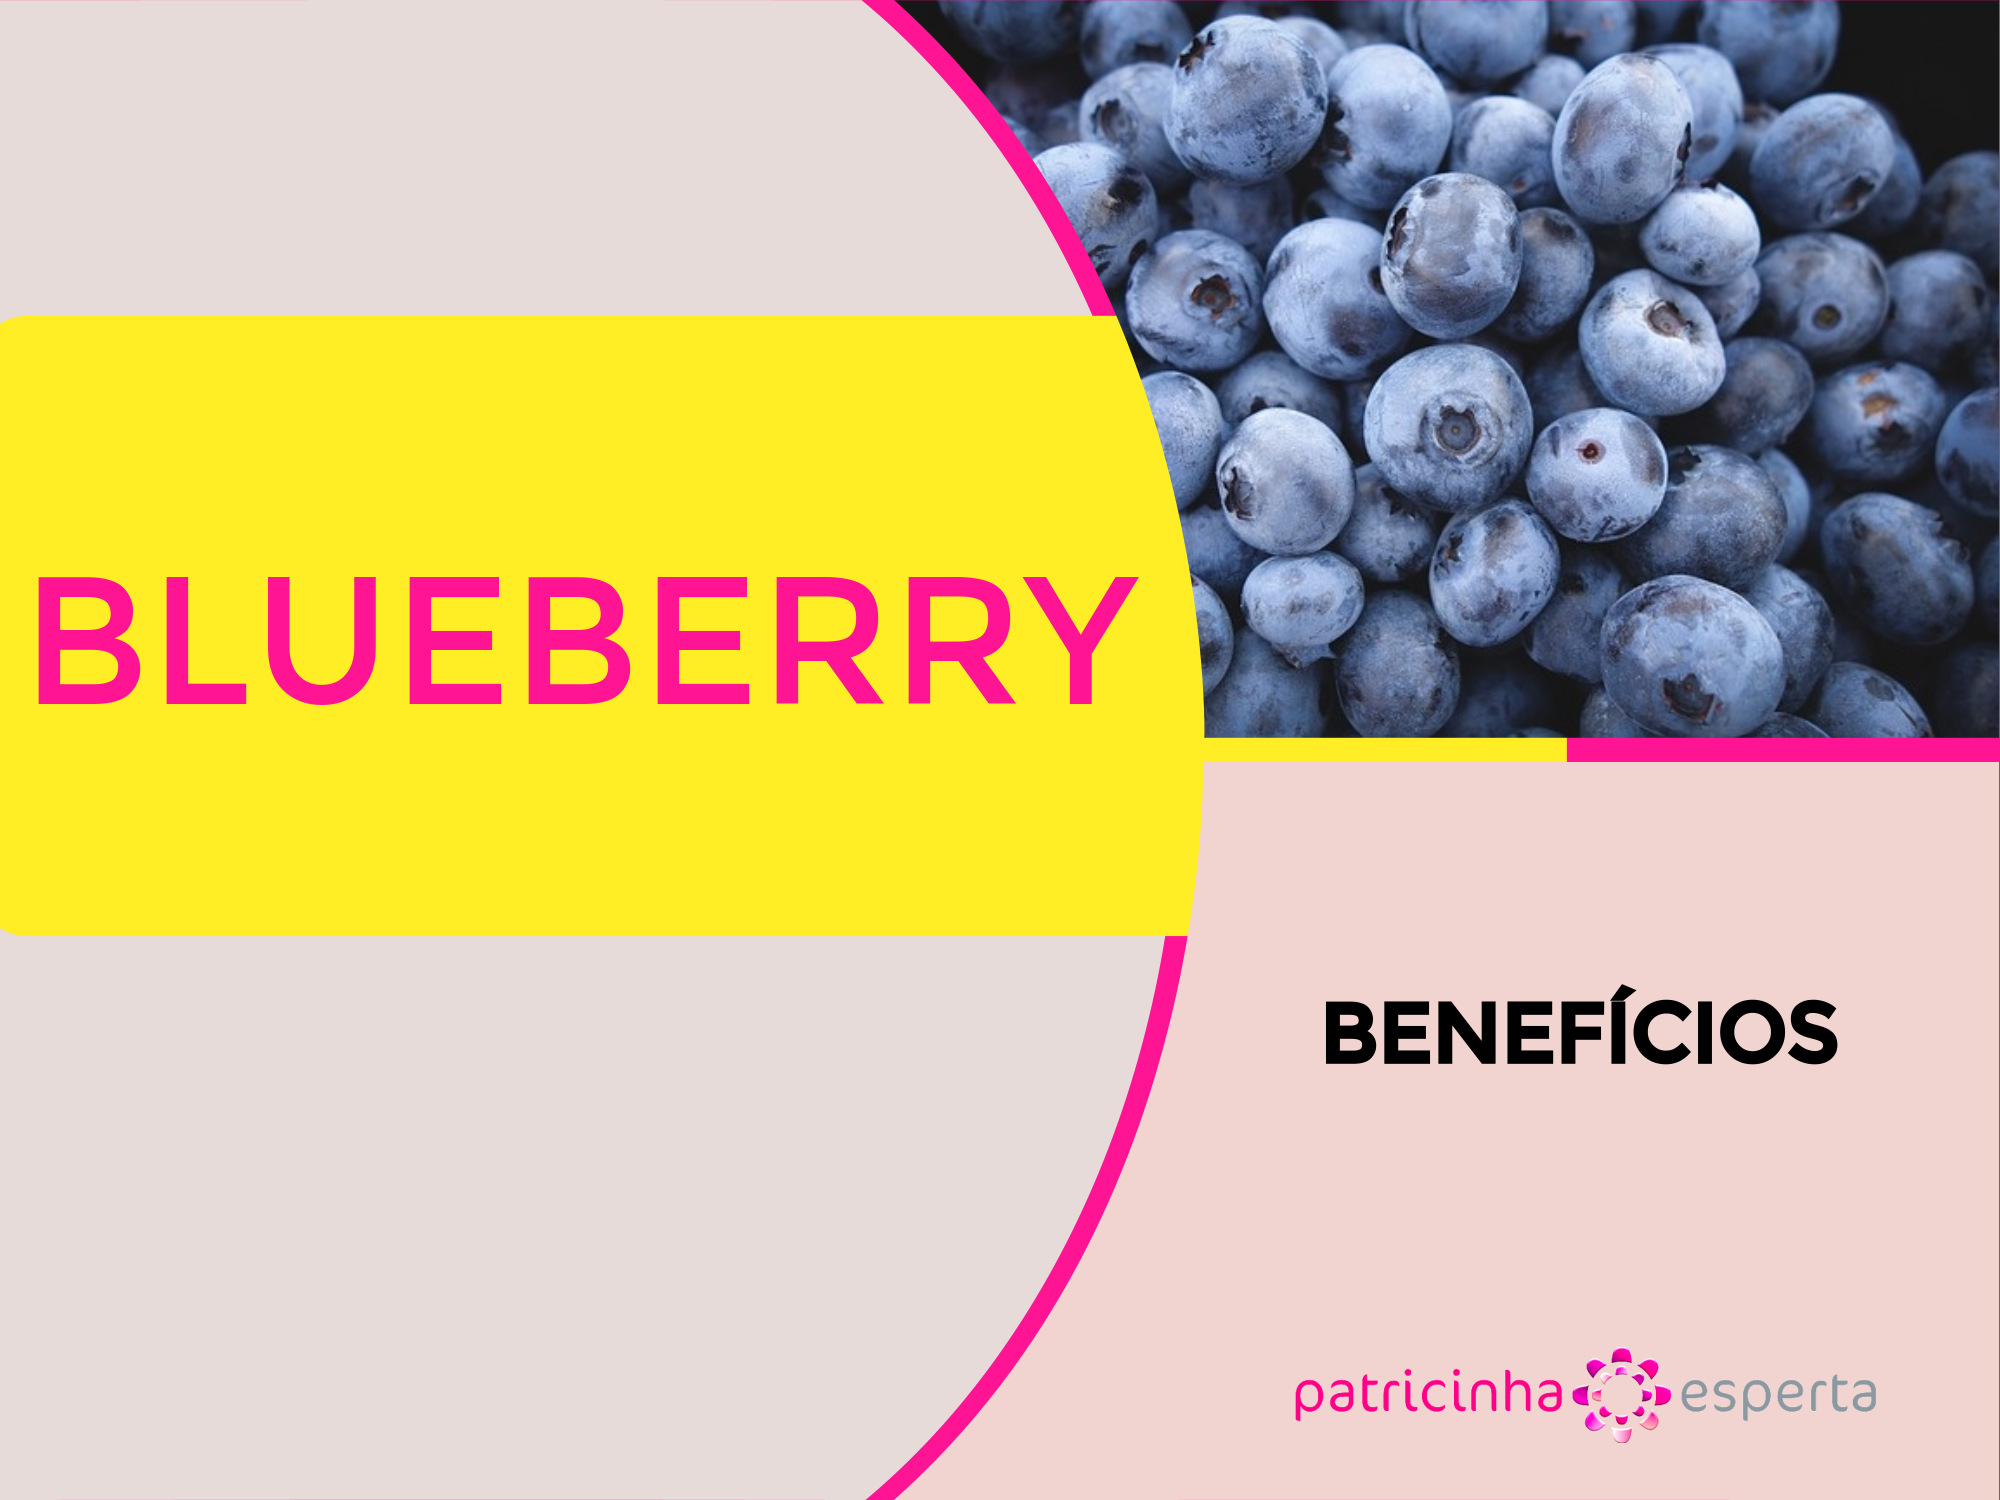  blueberry beneficios